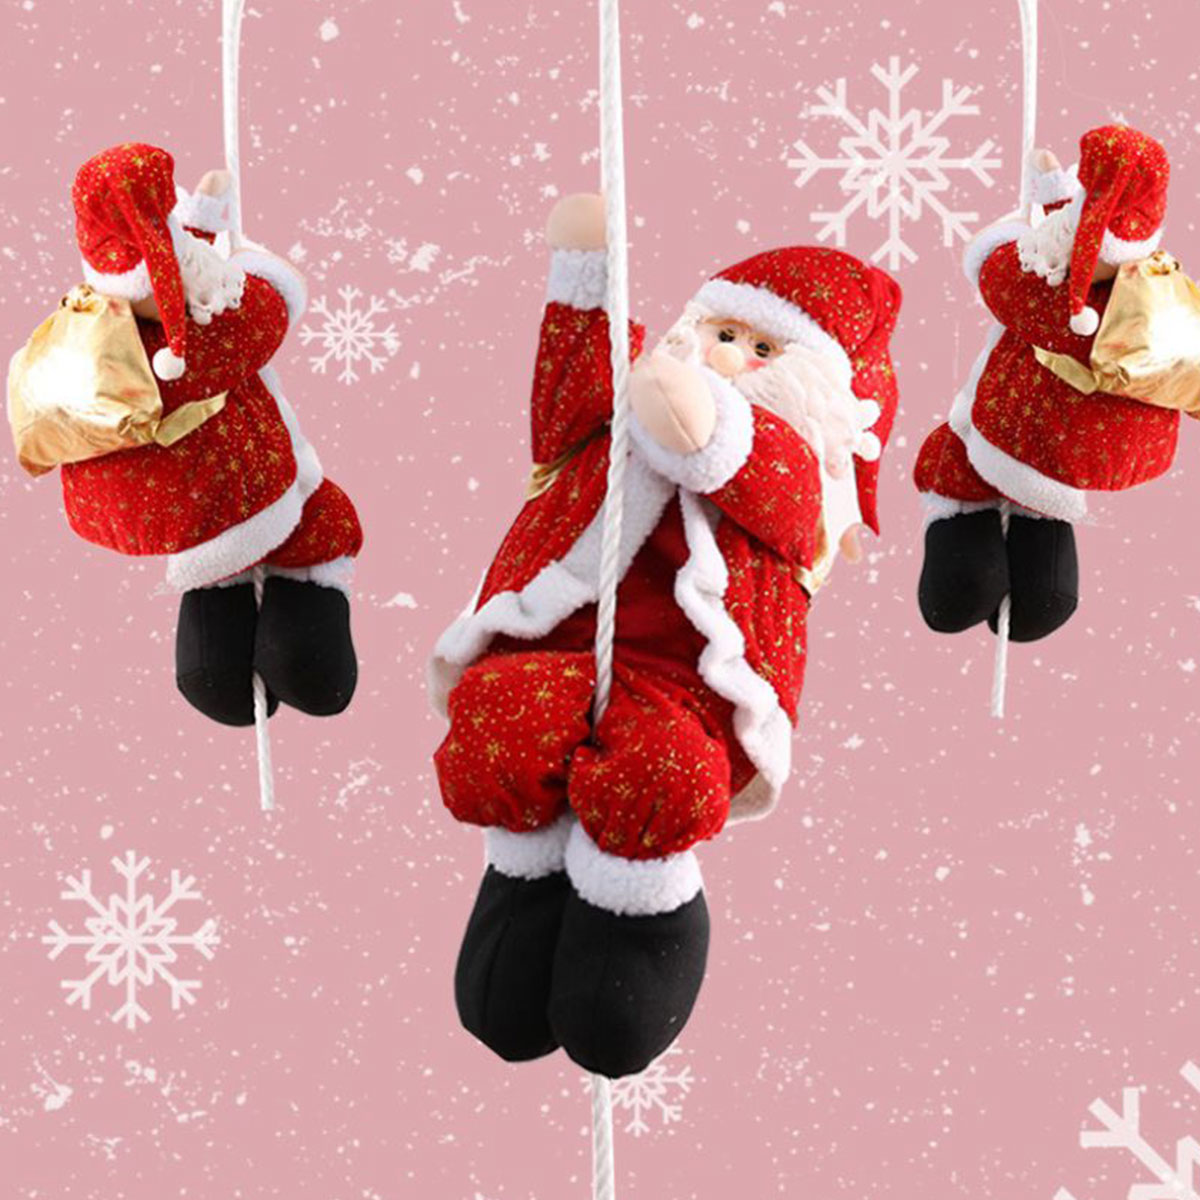 楽天市場 クリスマス 飾り サンタクロース 人形 サンタ オーナメント 飾り付け クリスマスパーティー 飾りつけ 部屋 装飾 デコレーション いいひ 楽天市場店